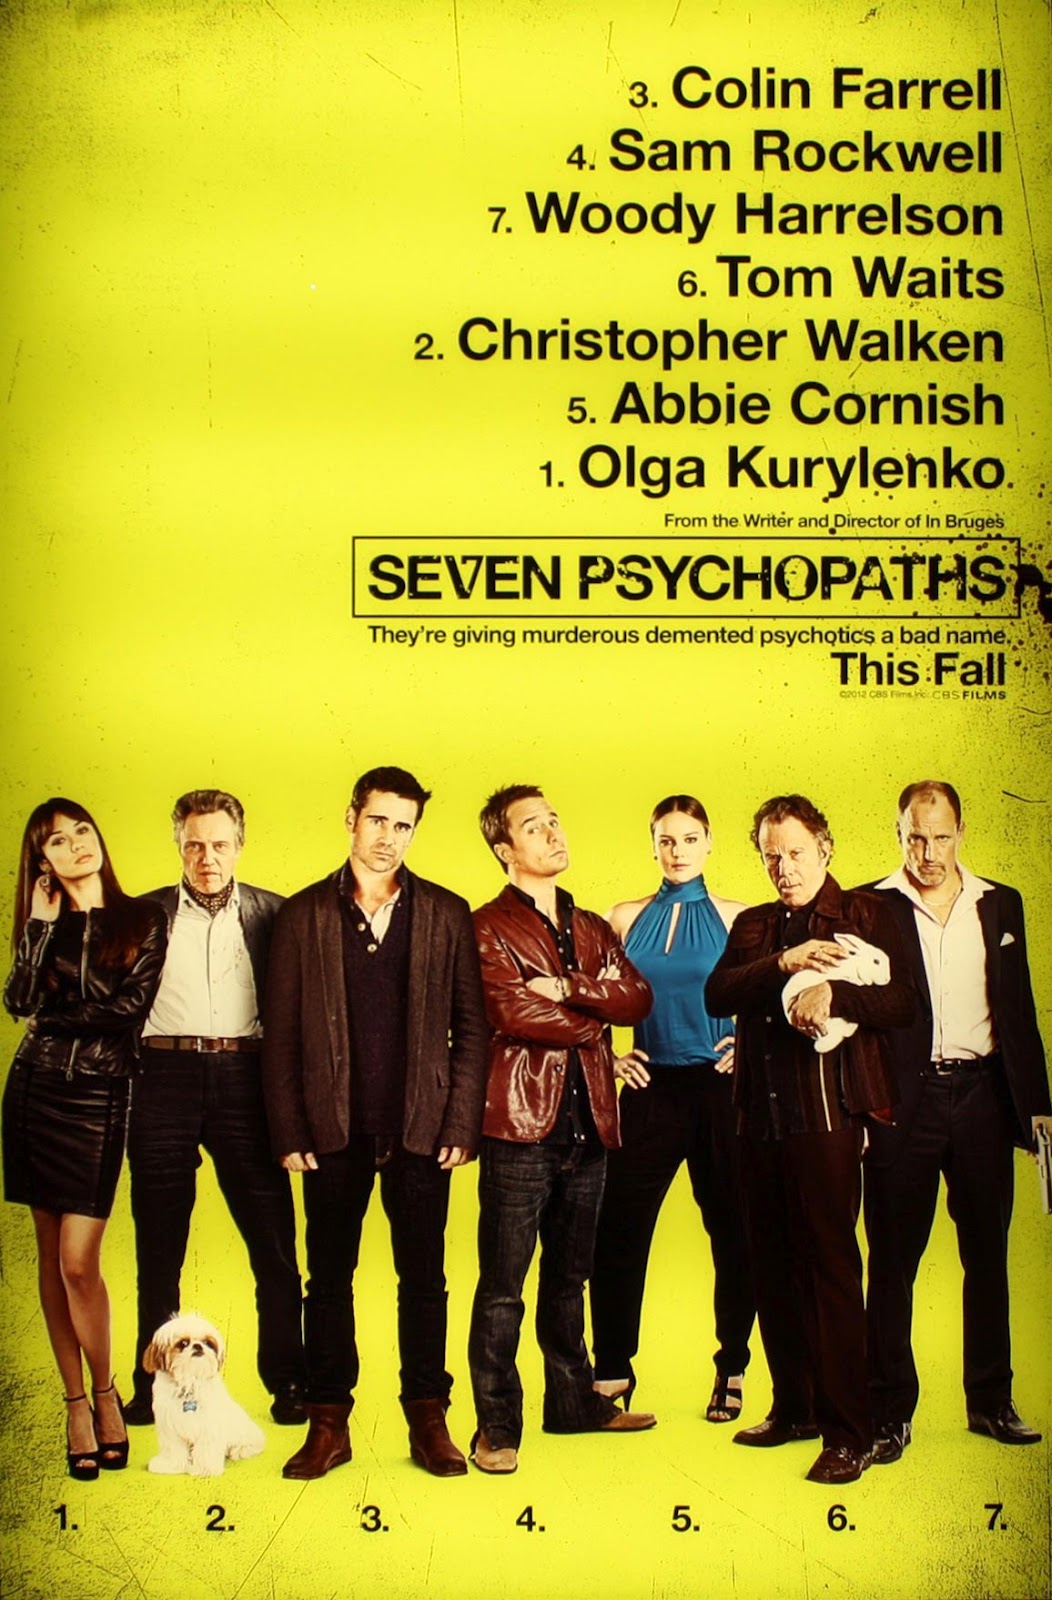 http://2.bp.blogspot.com/-Z79kFzykM1A/UCvqYuchw0I/AAAAAAAAEqc/x3GipXtBeKY/s1600/Seven-Psychopaths-poster-2012.jpg